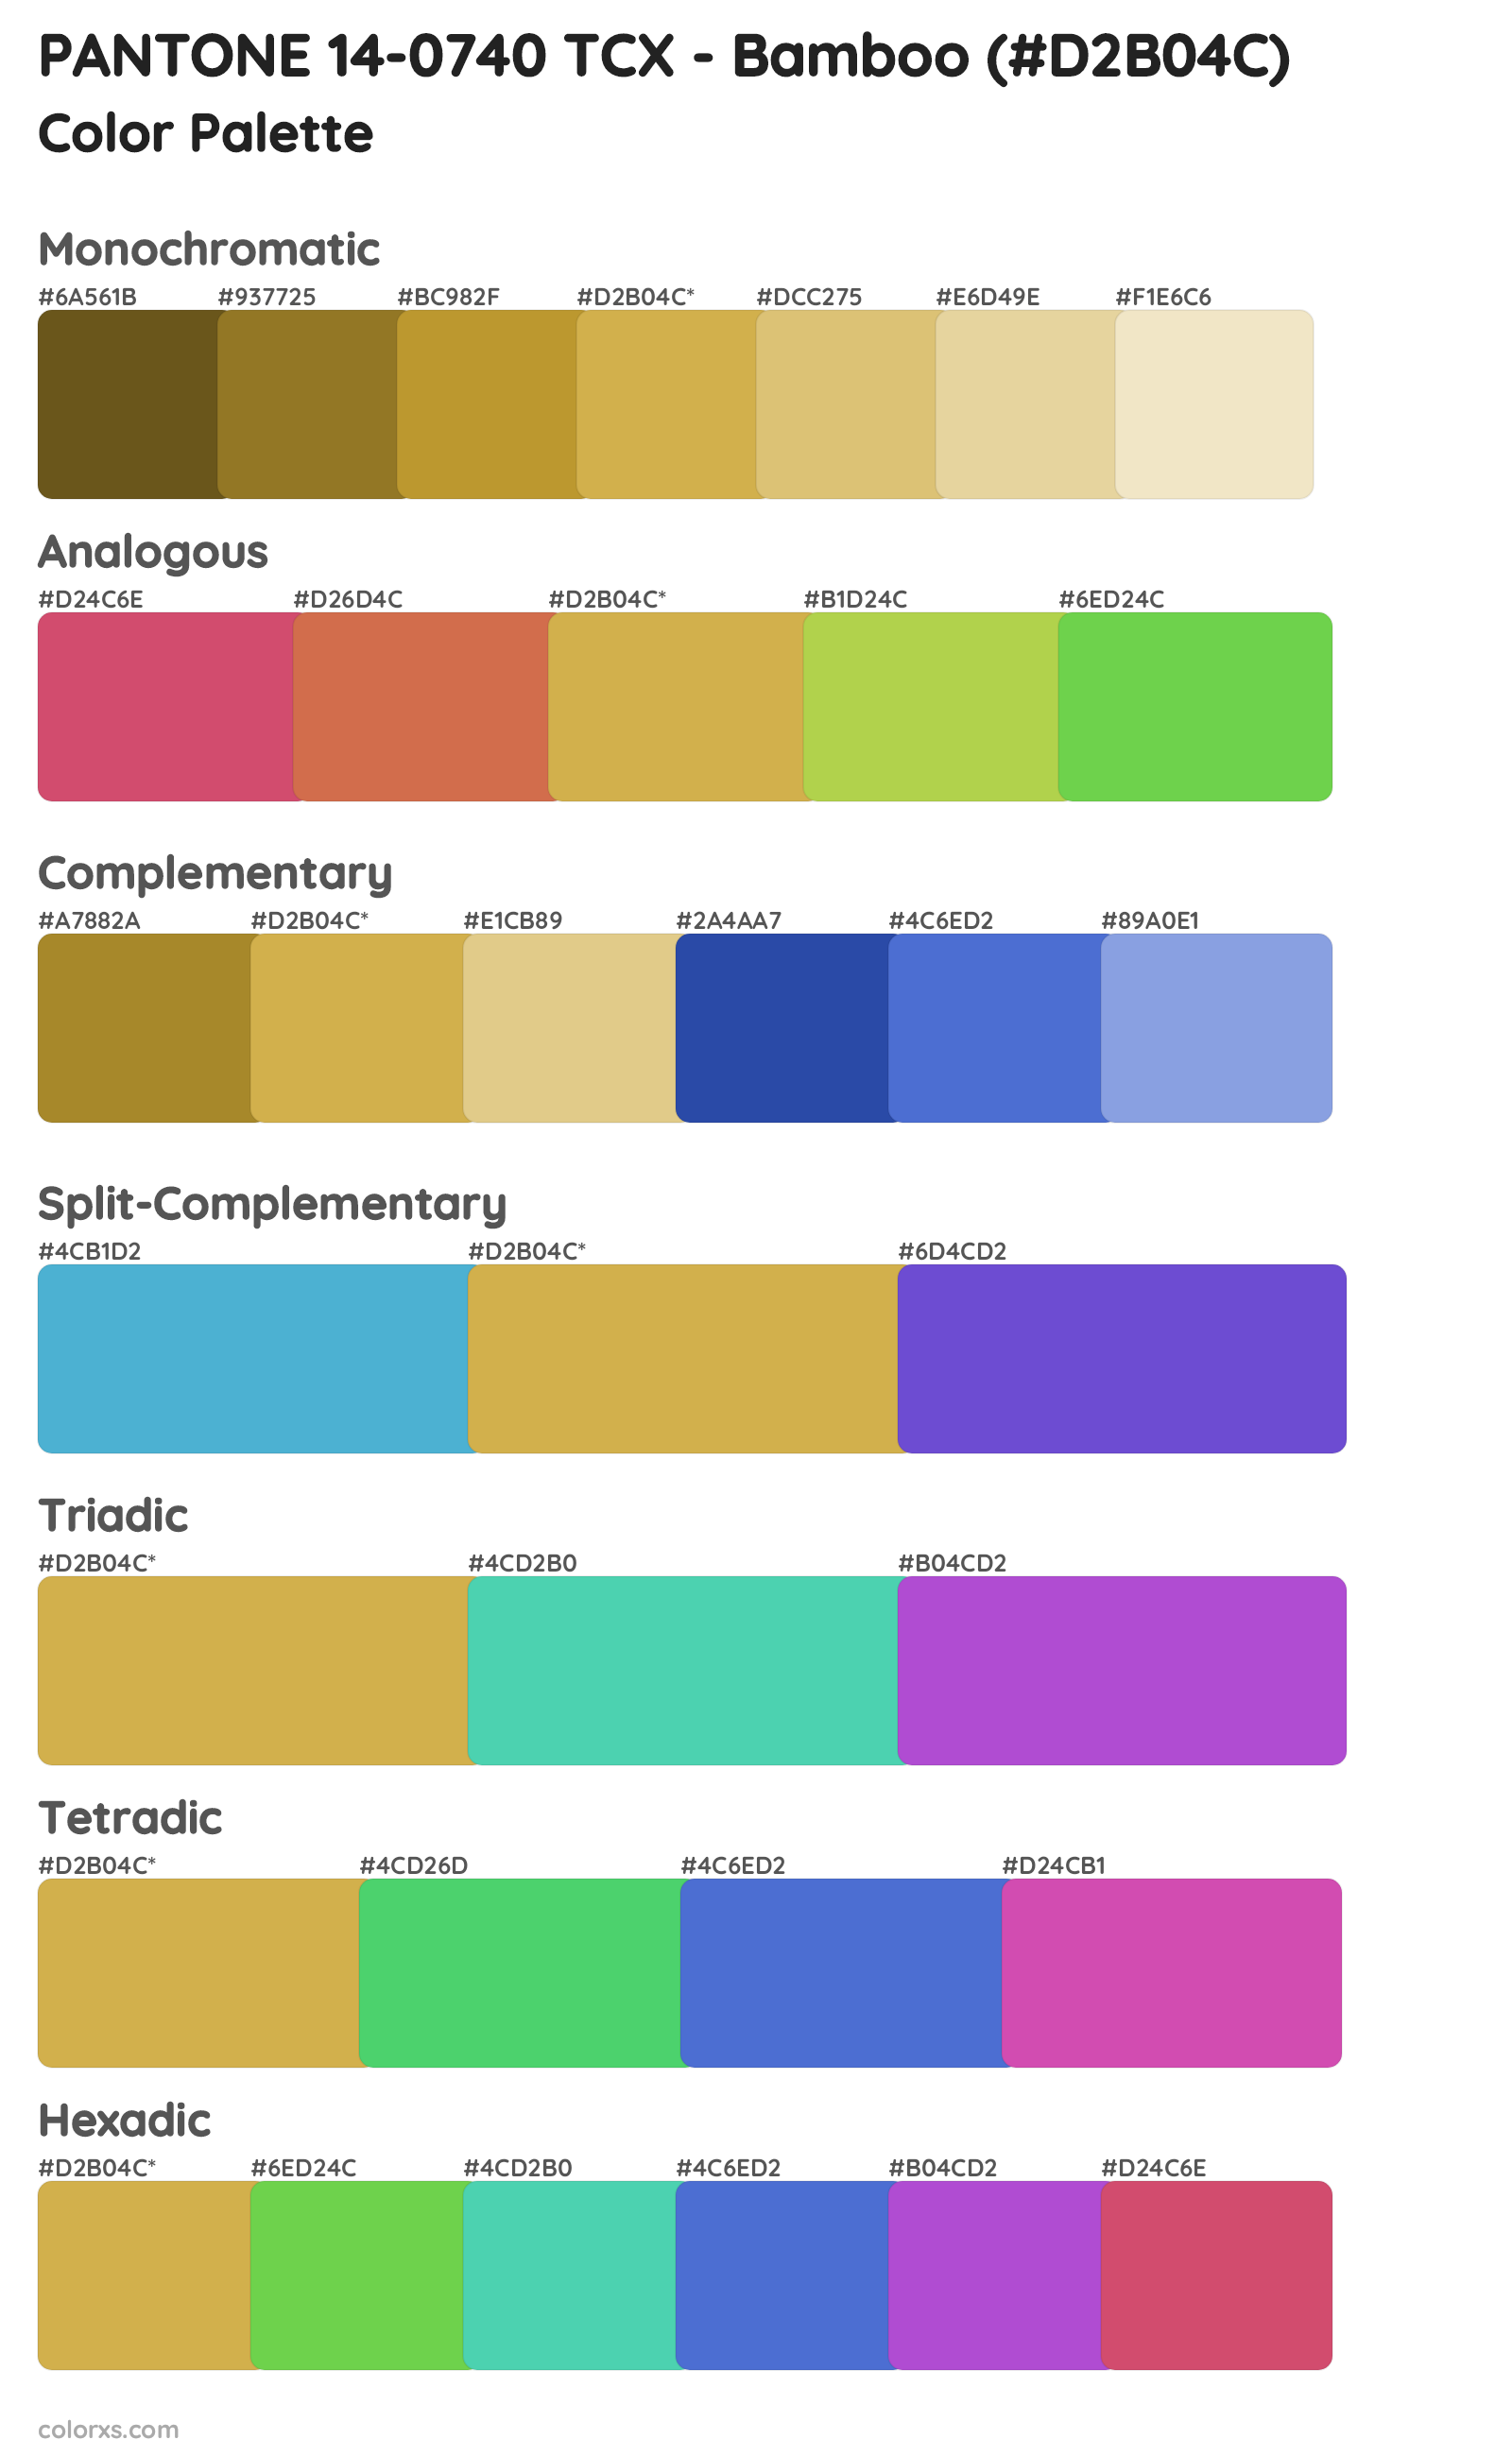 PANTONE 14-0740 TCX - Bamboo Color Scheme Palettes